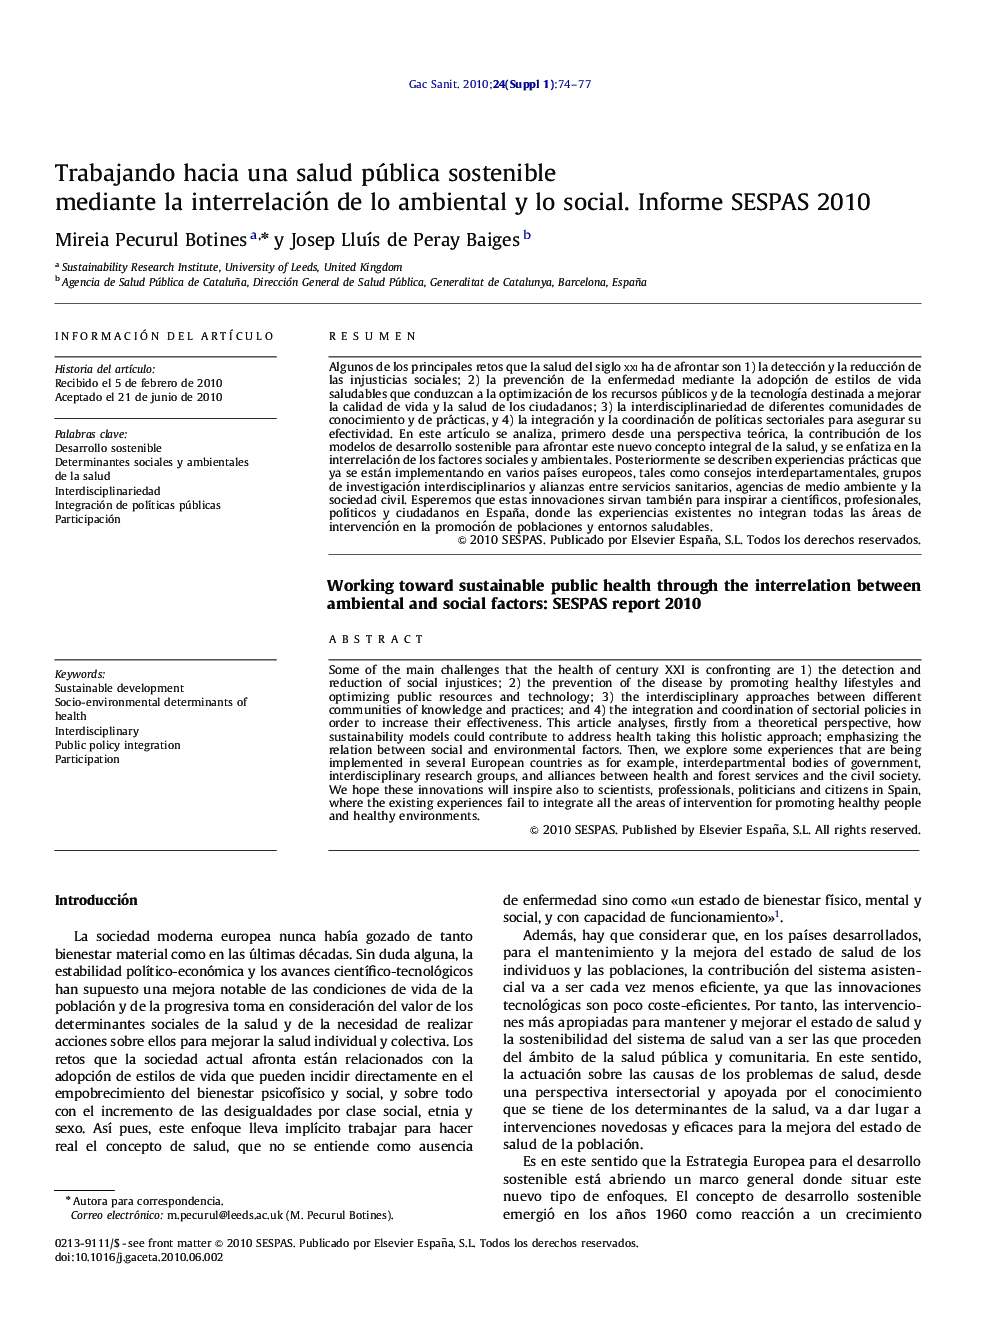 Trabajando hacia una salud pública sostenible mediante la interrelación de lo ambiental y lo social. Informe SESPAS 2010